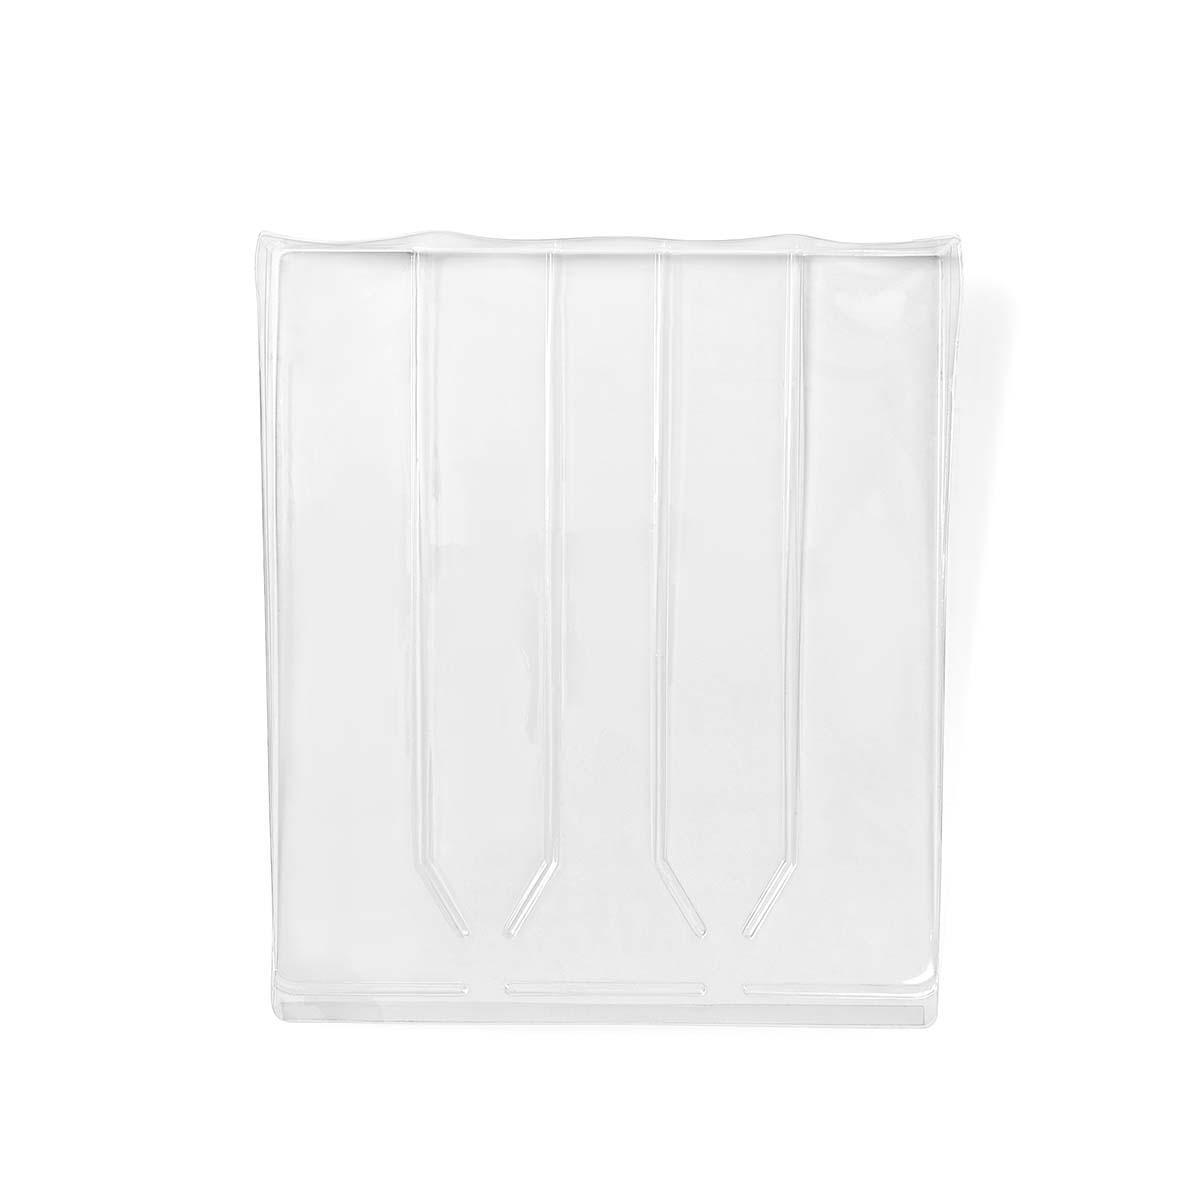 Nedis Salvagoccia per lavastoviglie | Trasparente | Plastica | 45 x 52 x 5 cm  